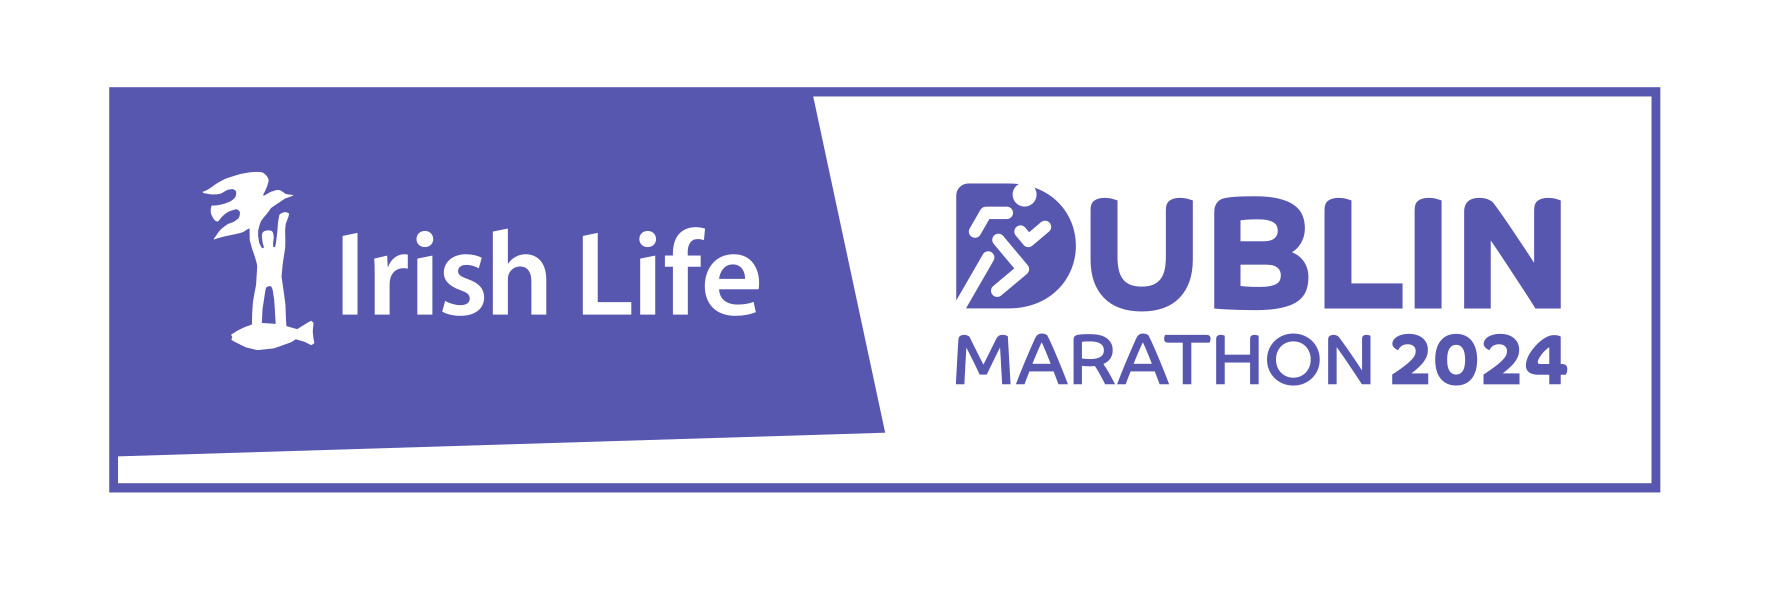 IrishLife Dublin Marathon 2019